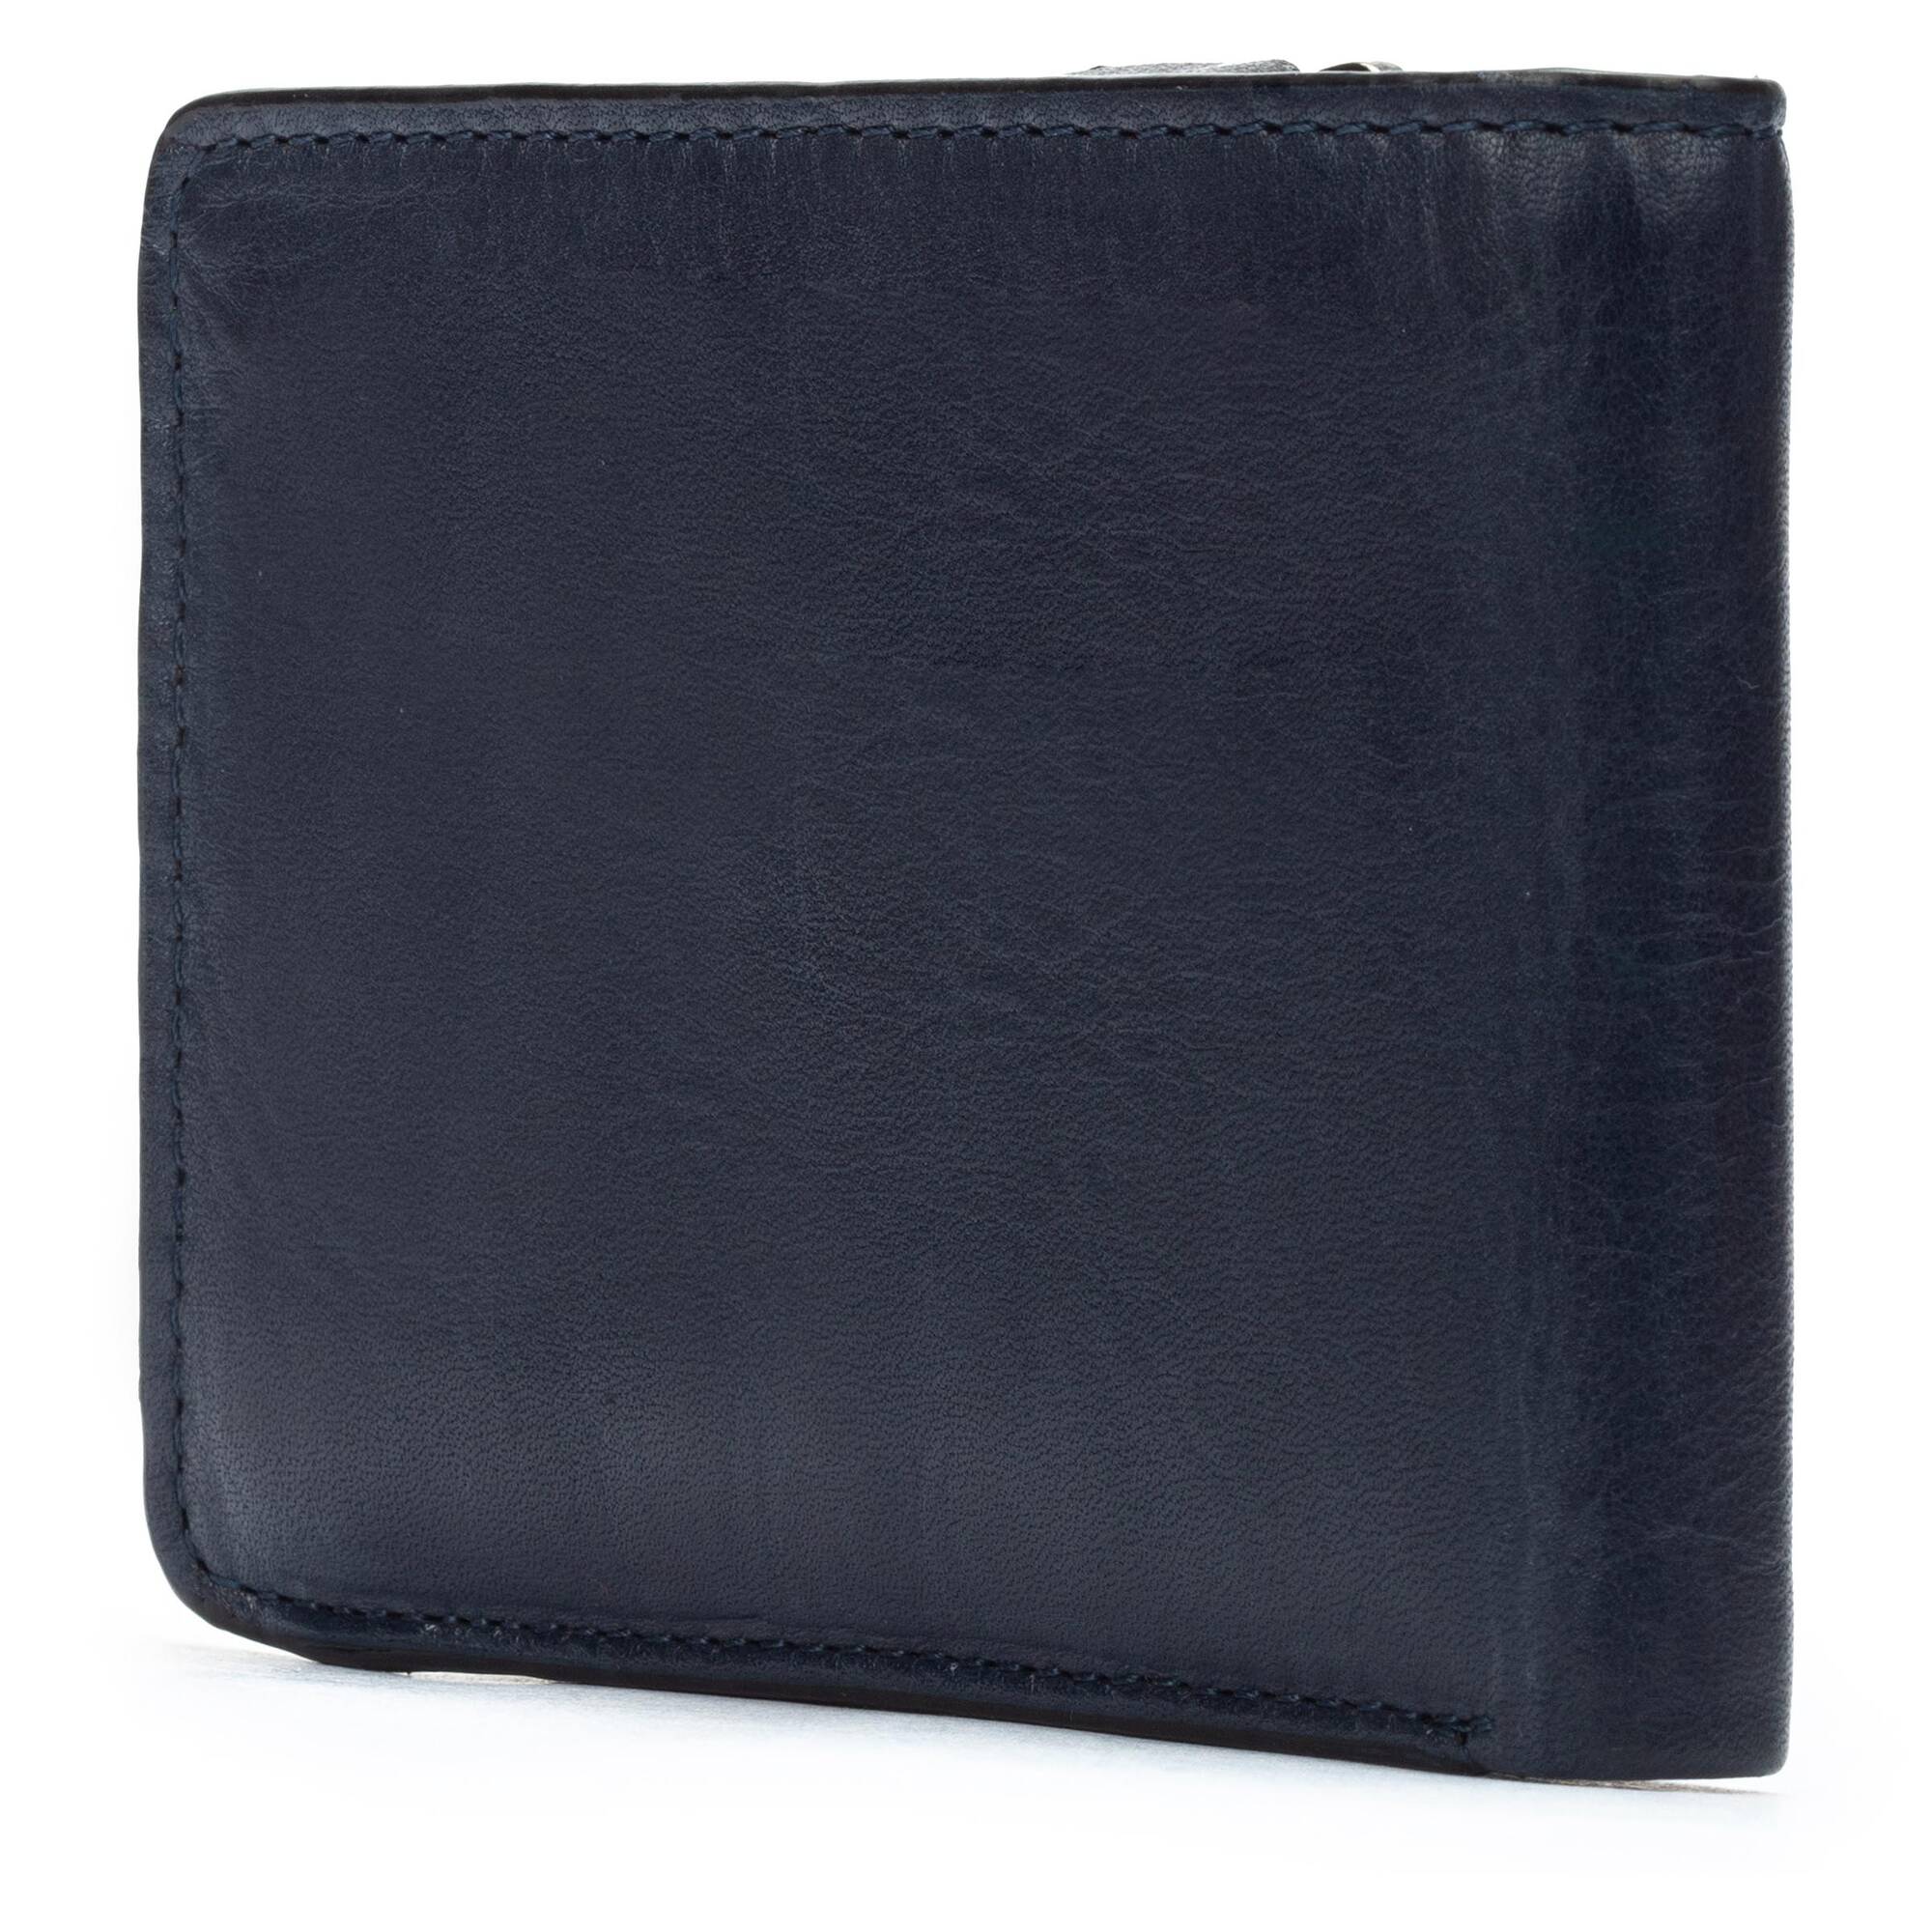 Zoom Brieftaschen MAC-W179, BLUE, large